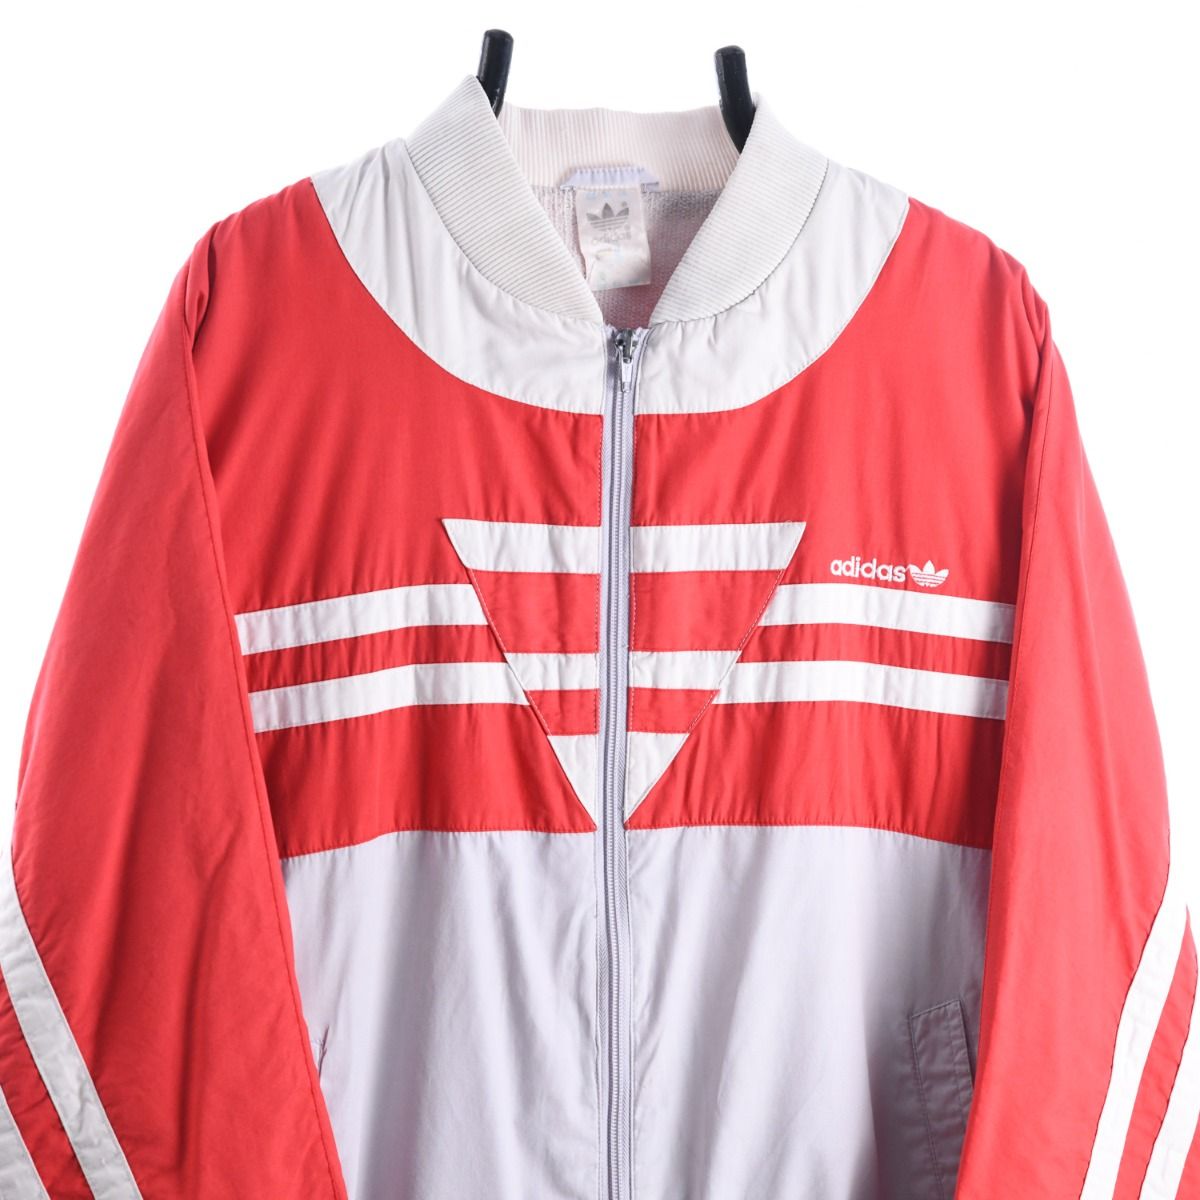 Adidas 1980s Jacket